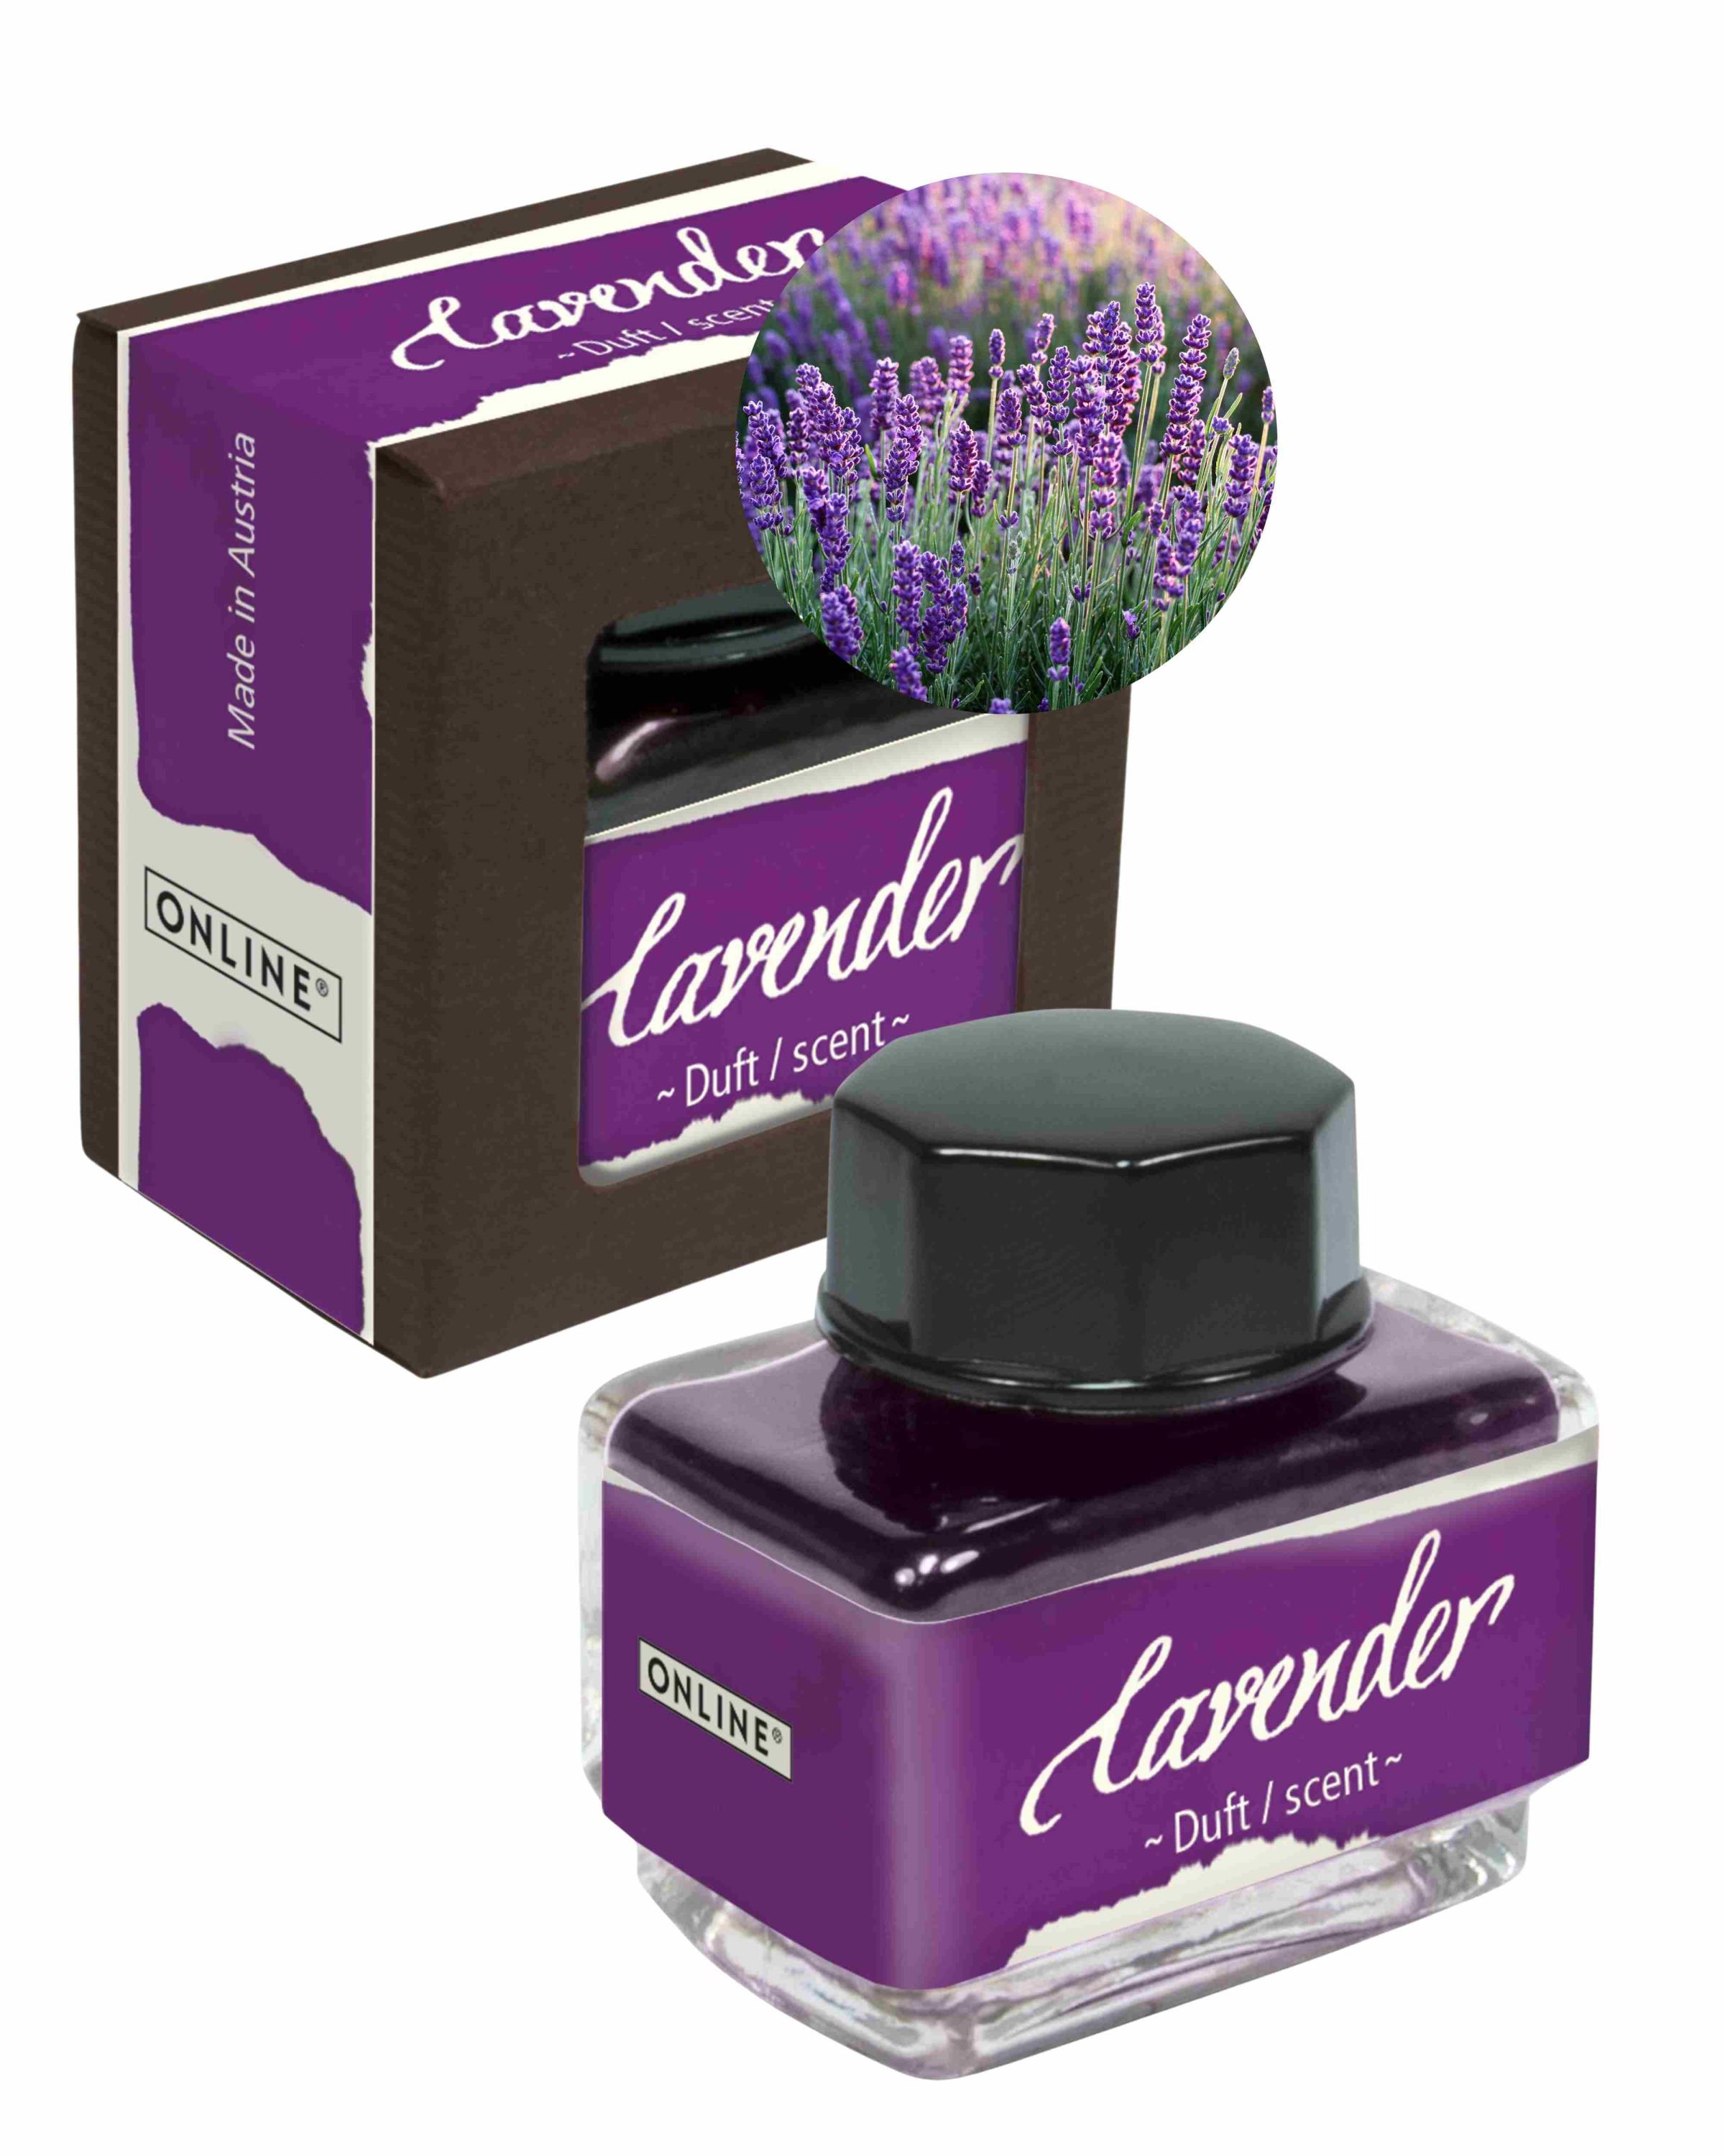 Tinte der Sinne 15 ml mit Duft - Aroma Lavendel